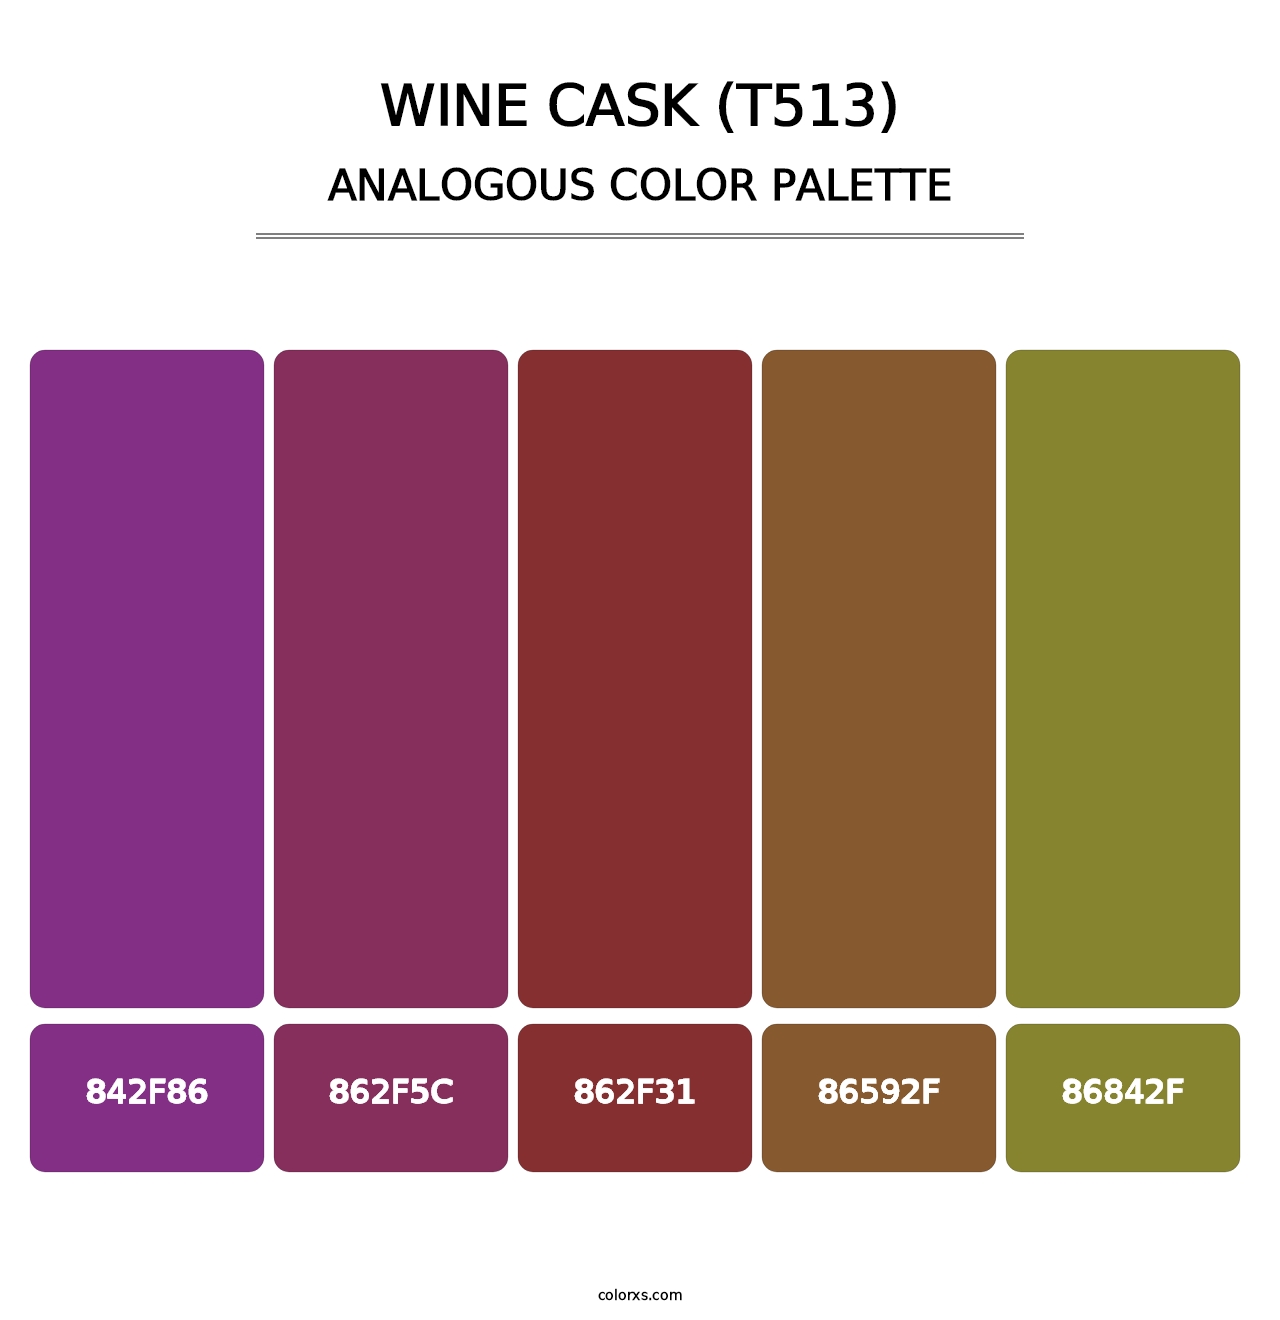 Wine Cask (T513) - Analogous Color Palette